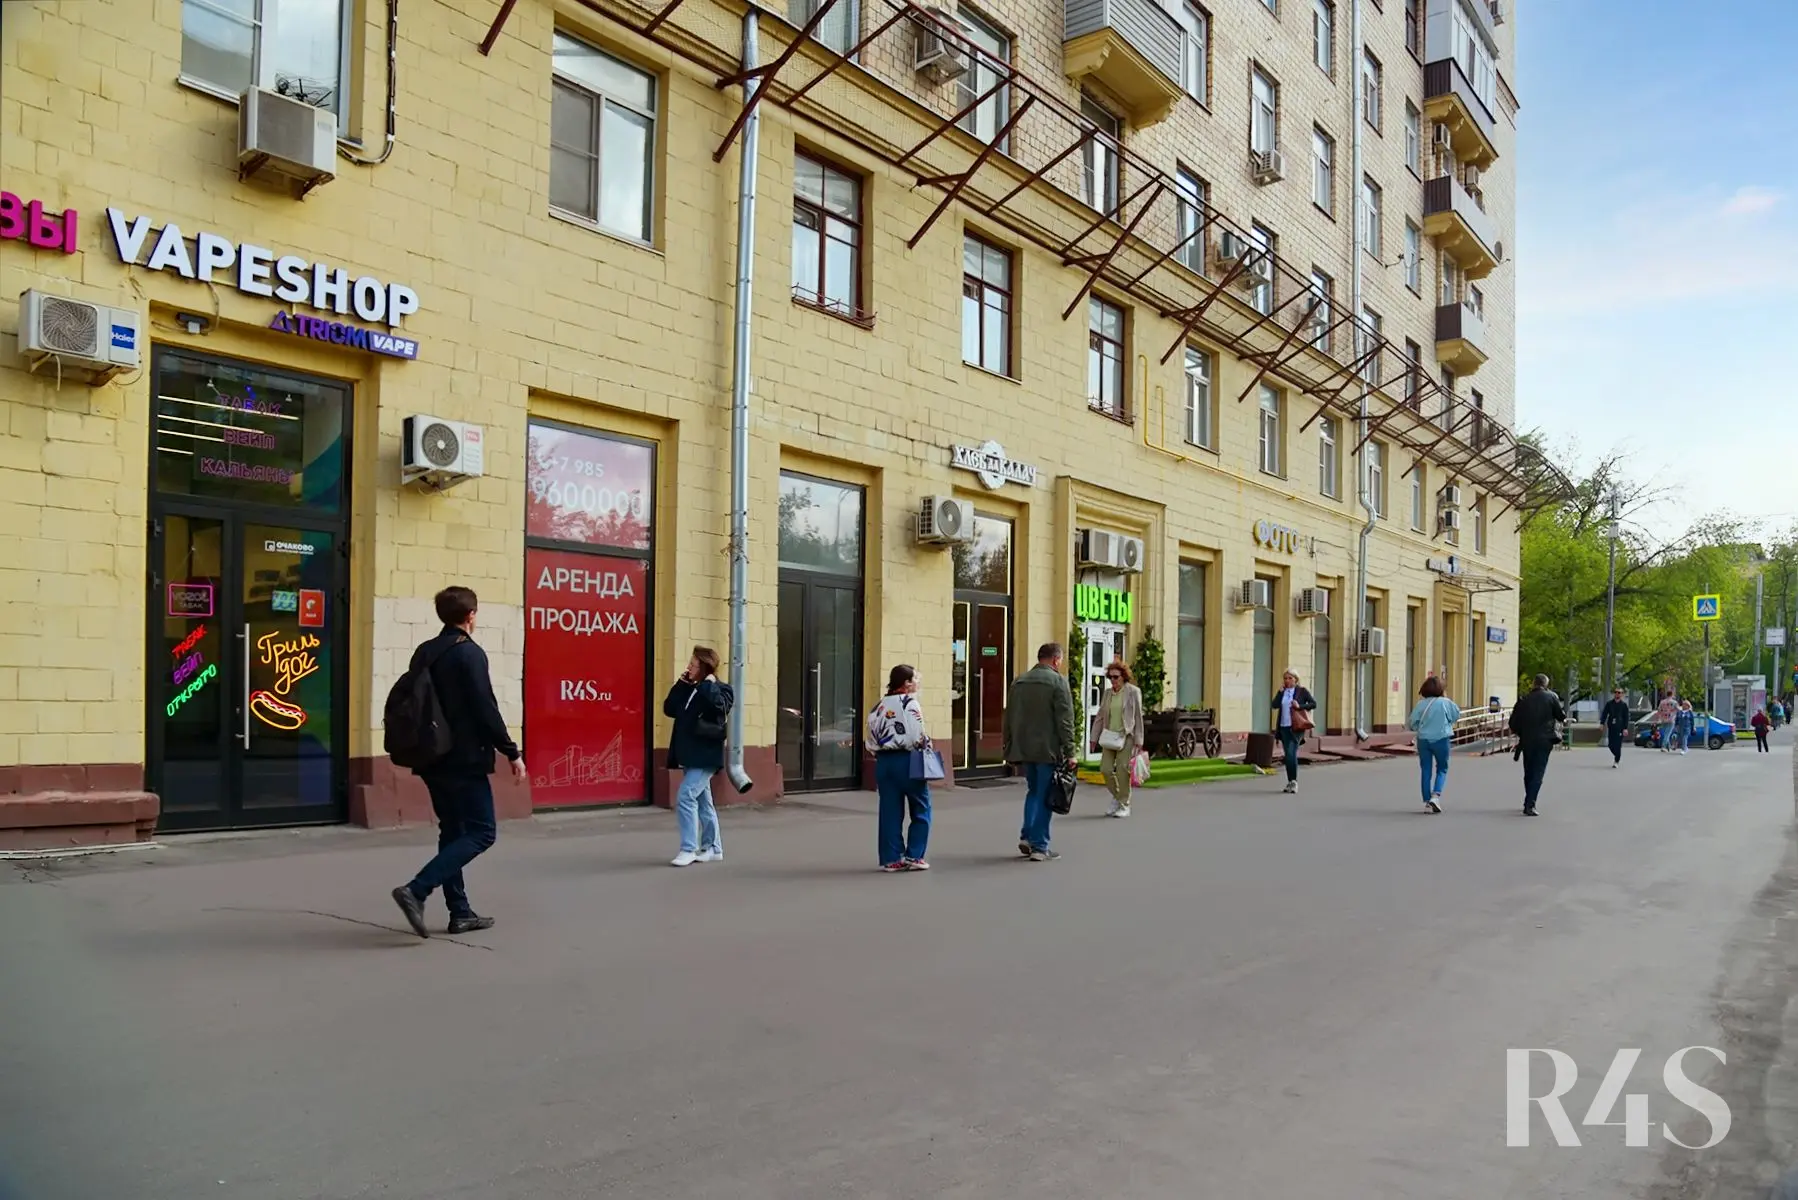 Продажа торговых помещений площадью 180 - 205.2 м2 в Москве:  Щербаковская, 35 R4S | Realty4Sale